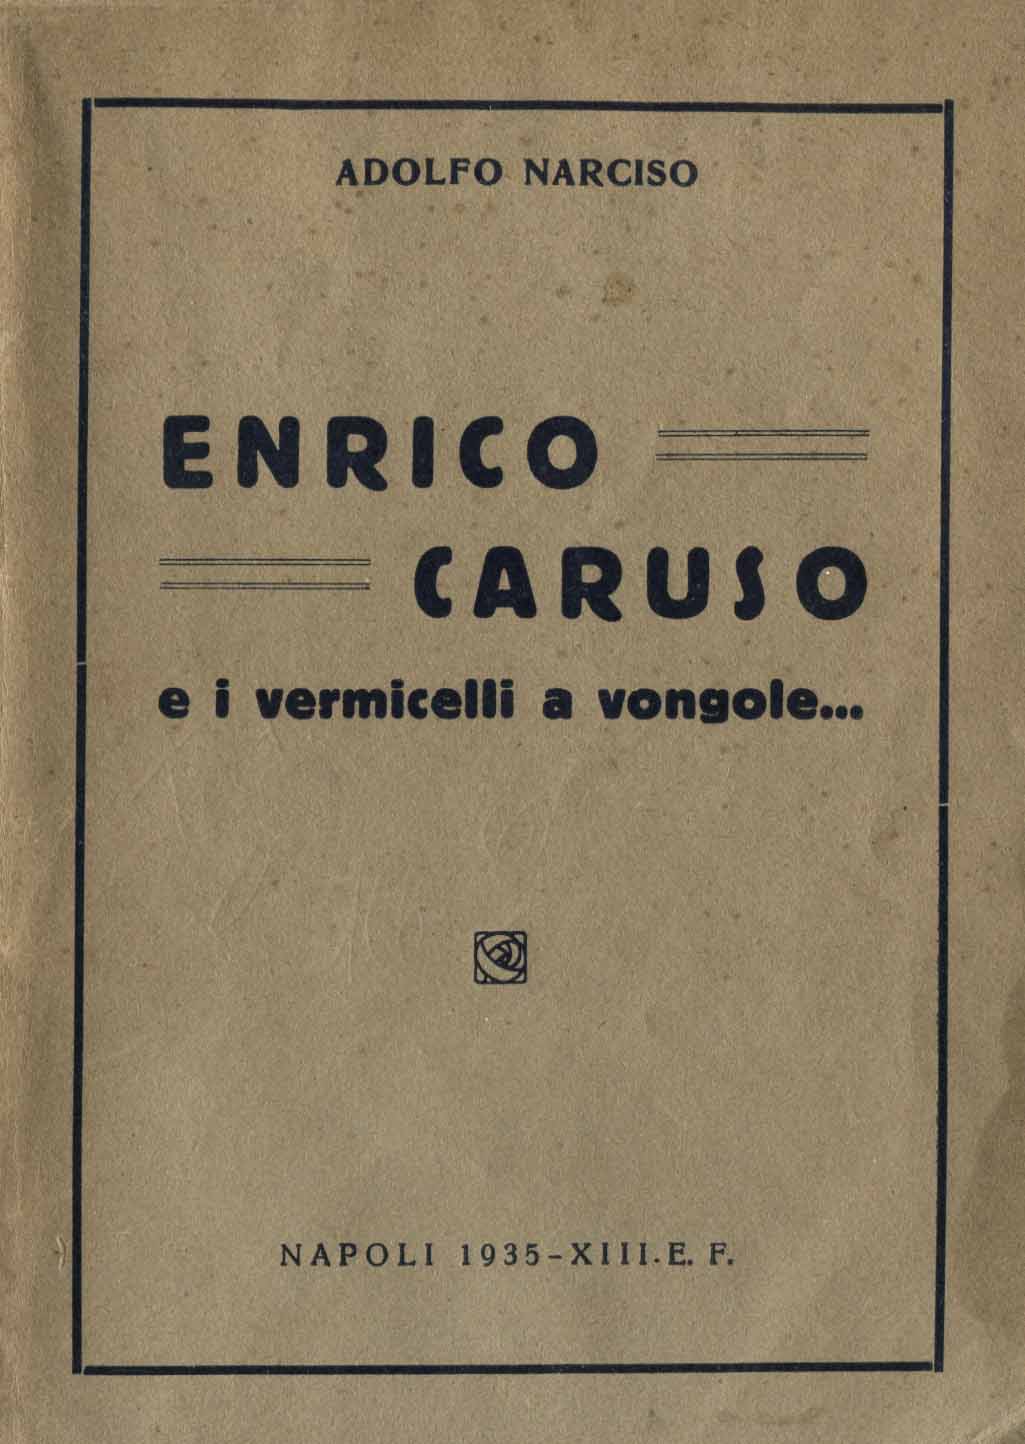 Enrico Caruso e i vermicelli a vongole... / Adolfo Narciso